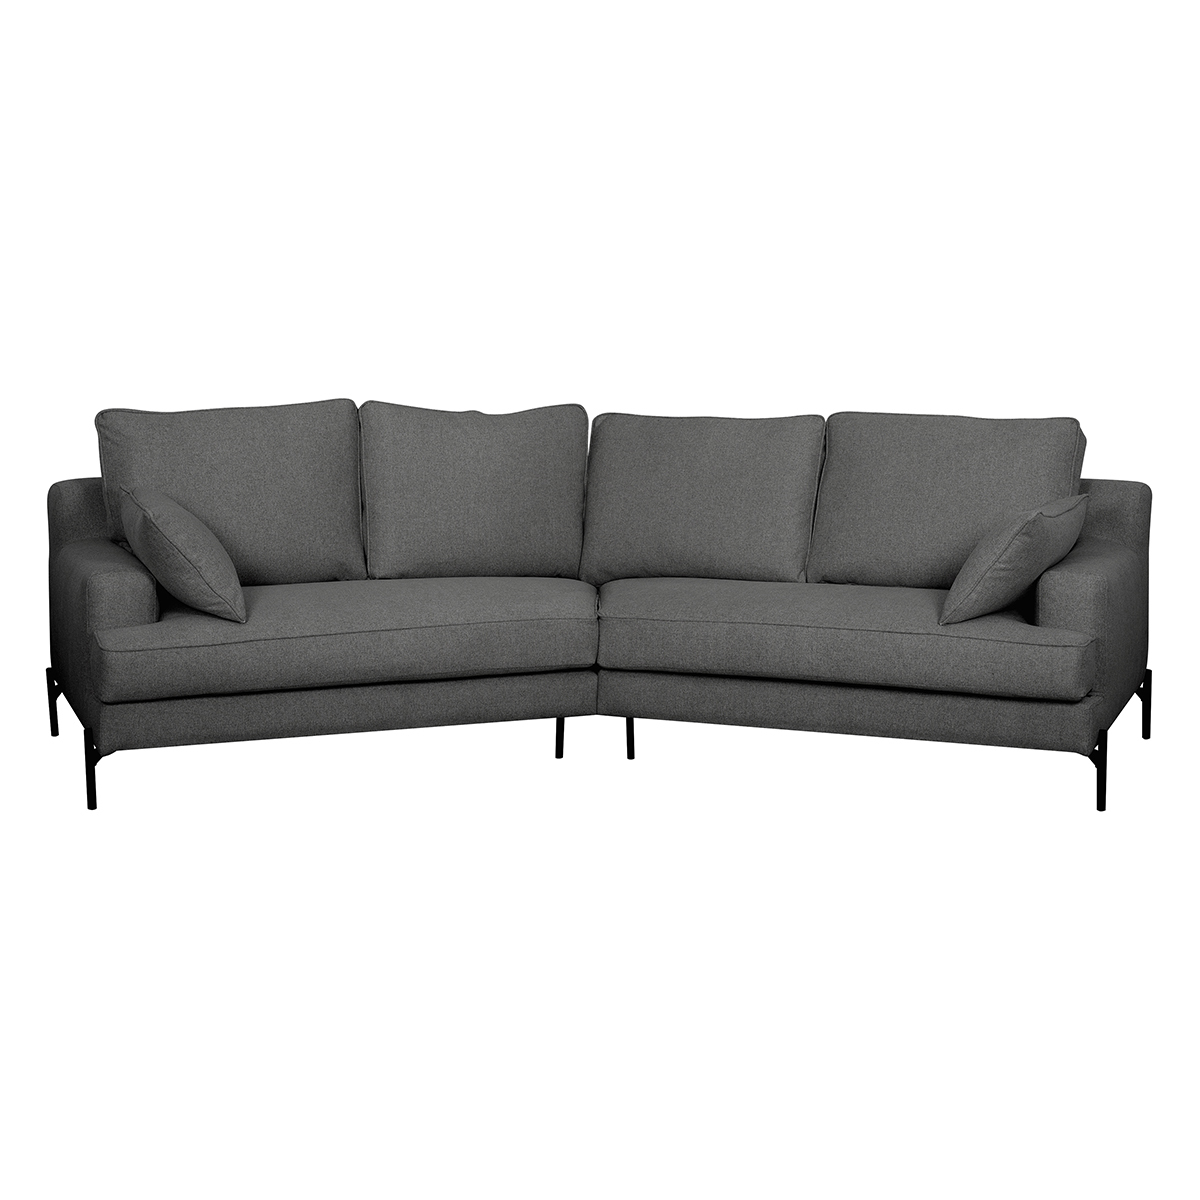 Canapé d'angle design 5 places en tissu gris anthracite et métal noir PUCHKINE vue1